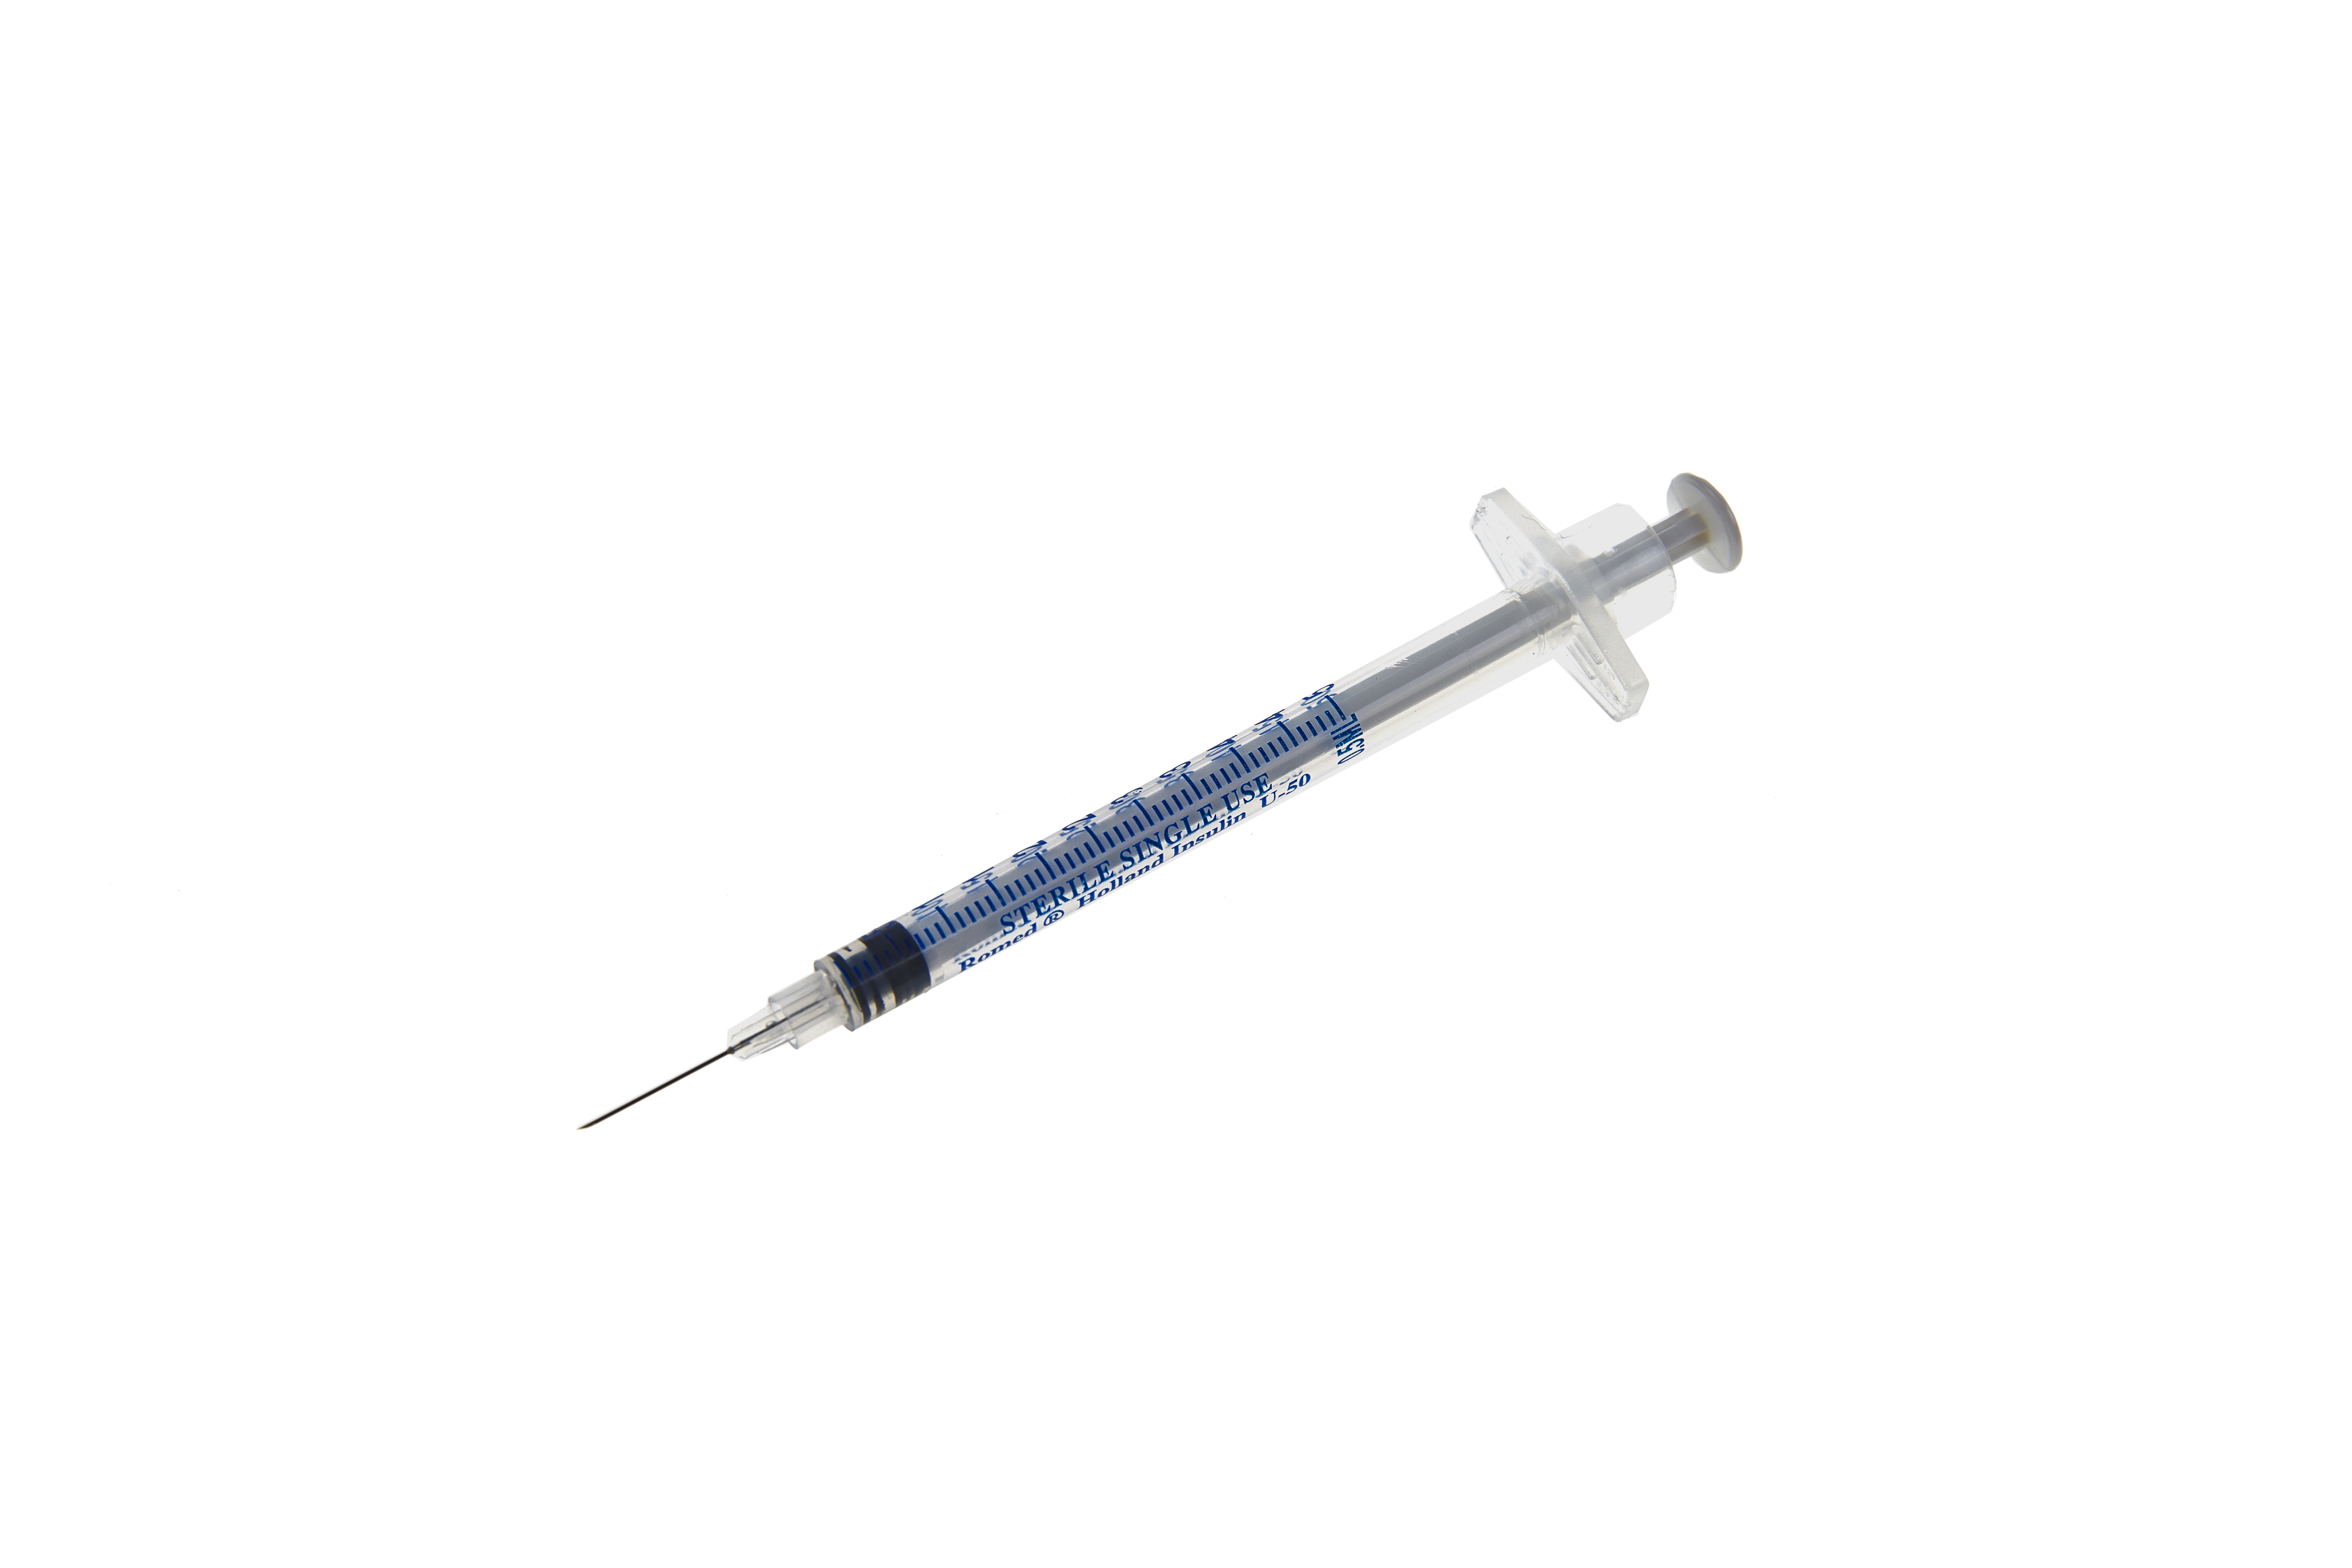 Seringues à insuline Romed 0,5 ml avec aiguille intégrée, 50 unités,  3IS-0.5ML-50U